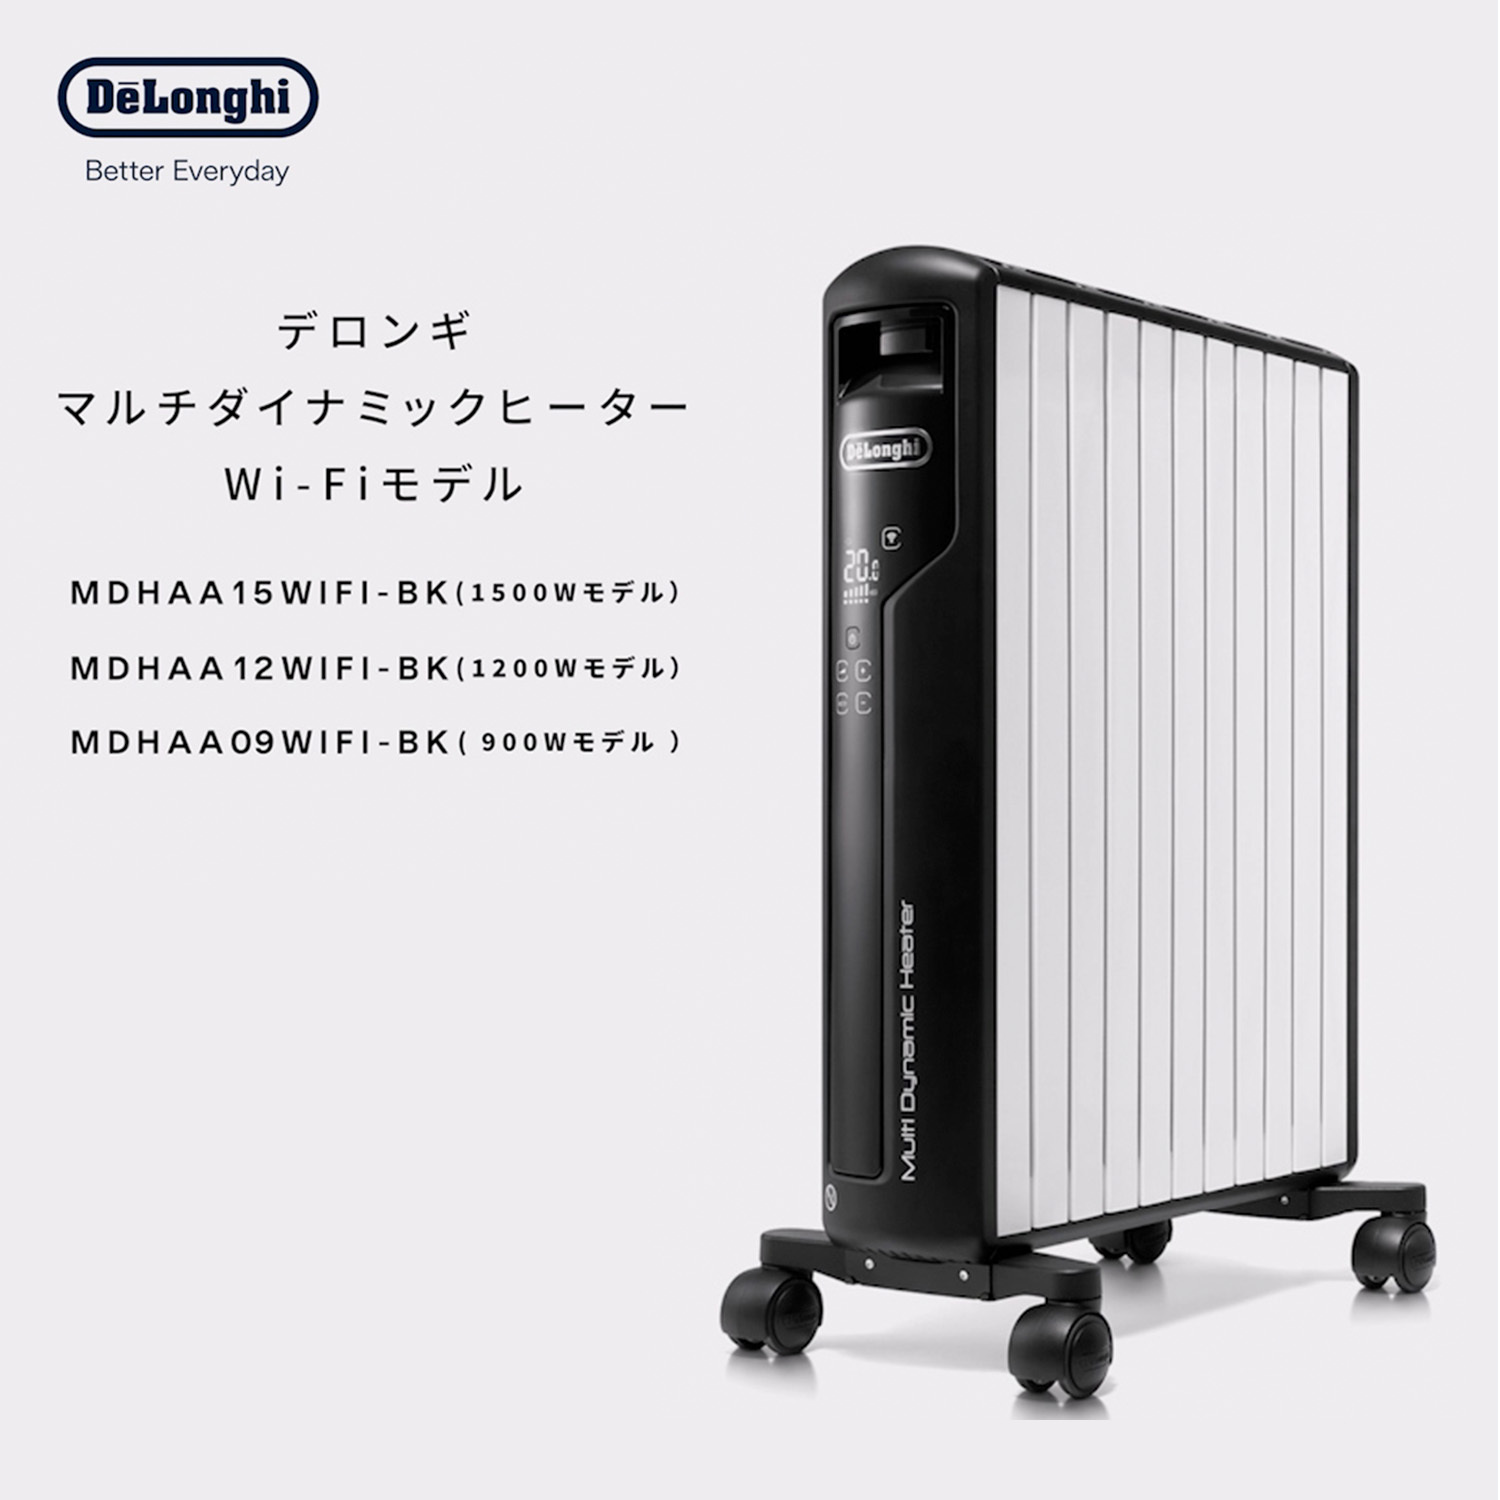 デロンギ マルチダイナミックヒーター Wi-Fiモデル MDHAA09WIFI-BK 